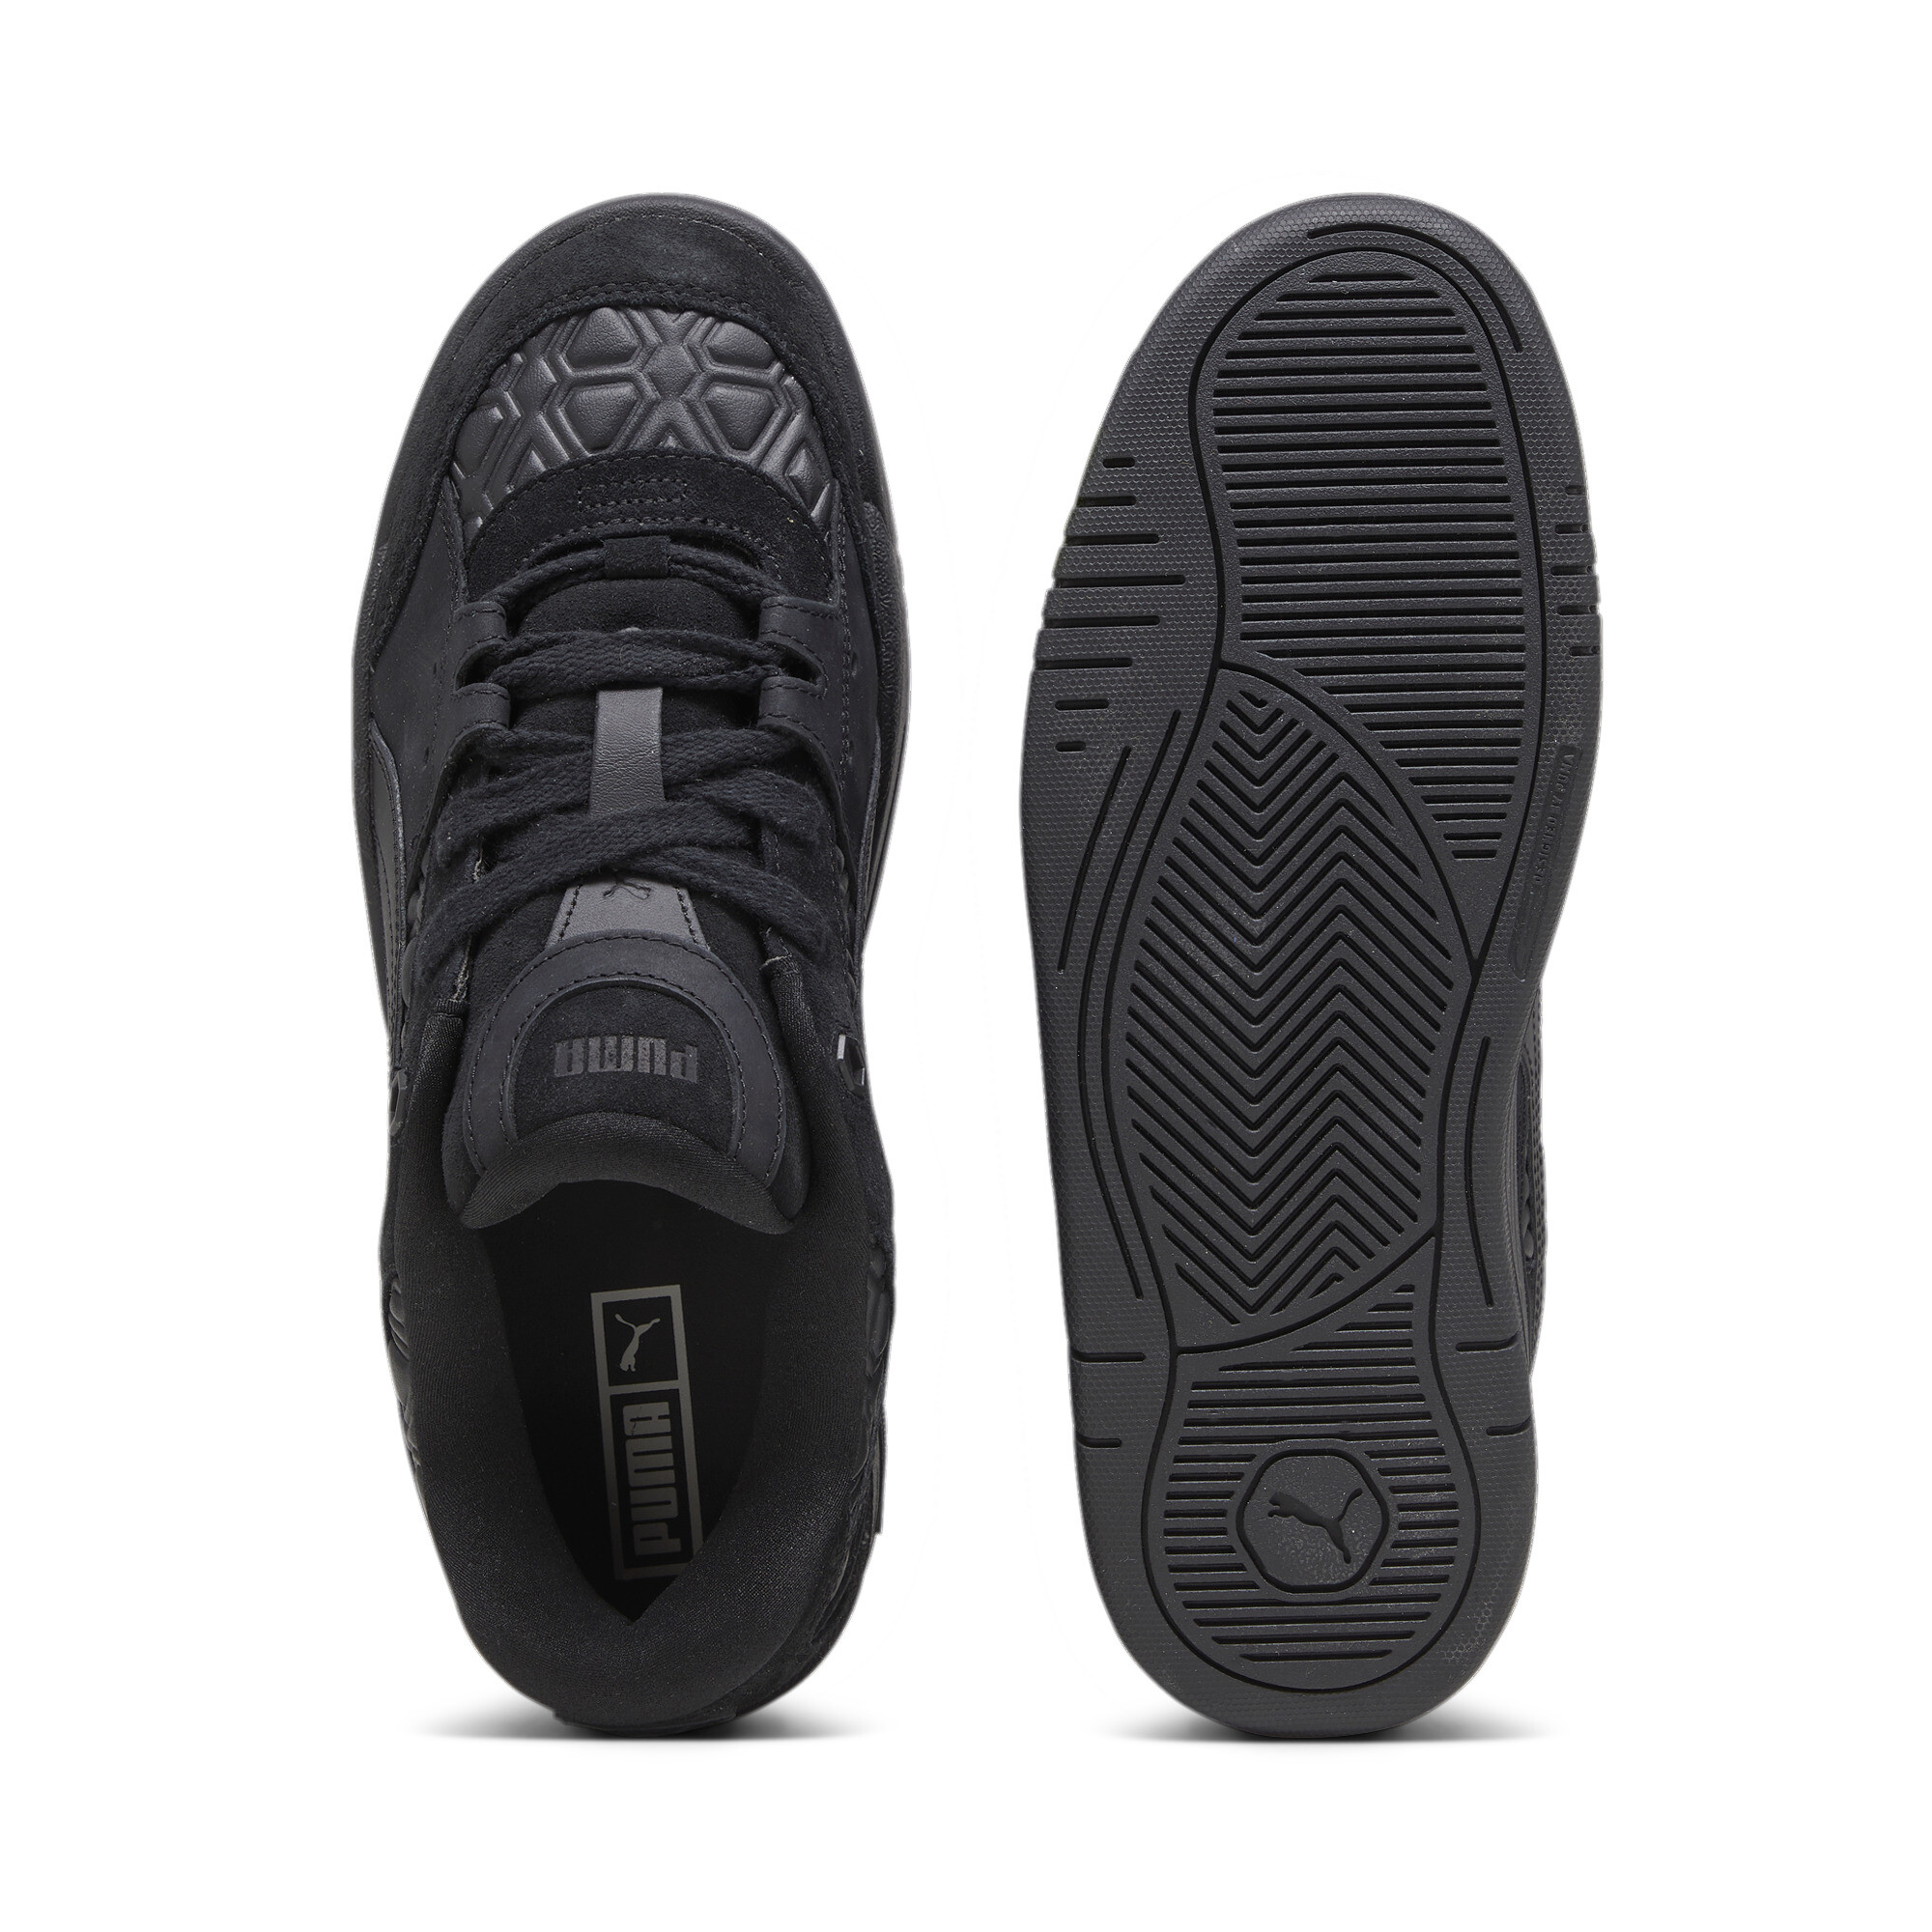 Men's LUXE SPORT PUMA-180 Sneakers In Black, Size EU 40